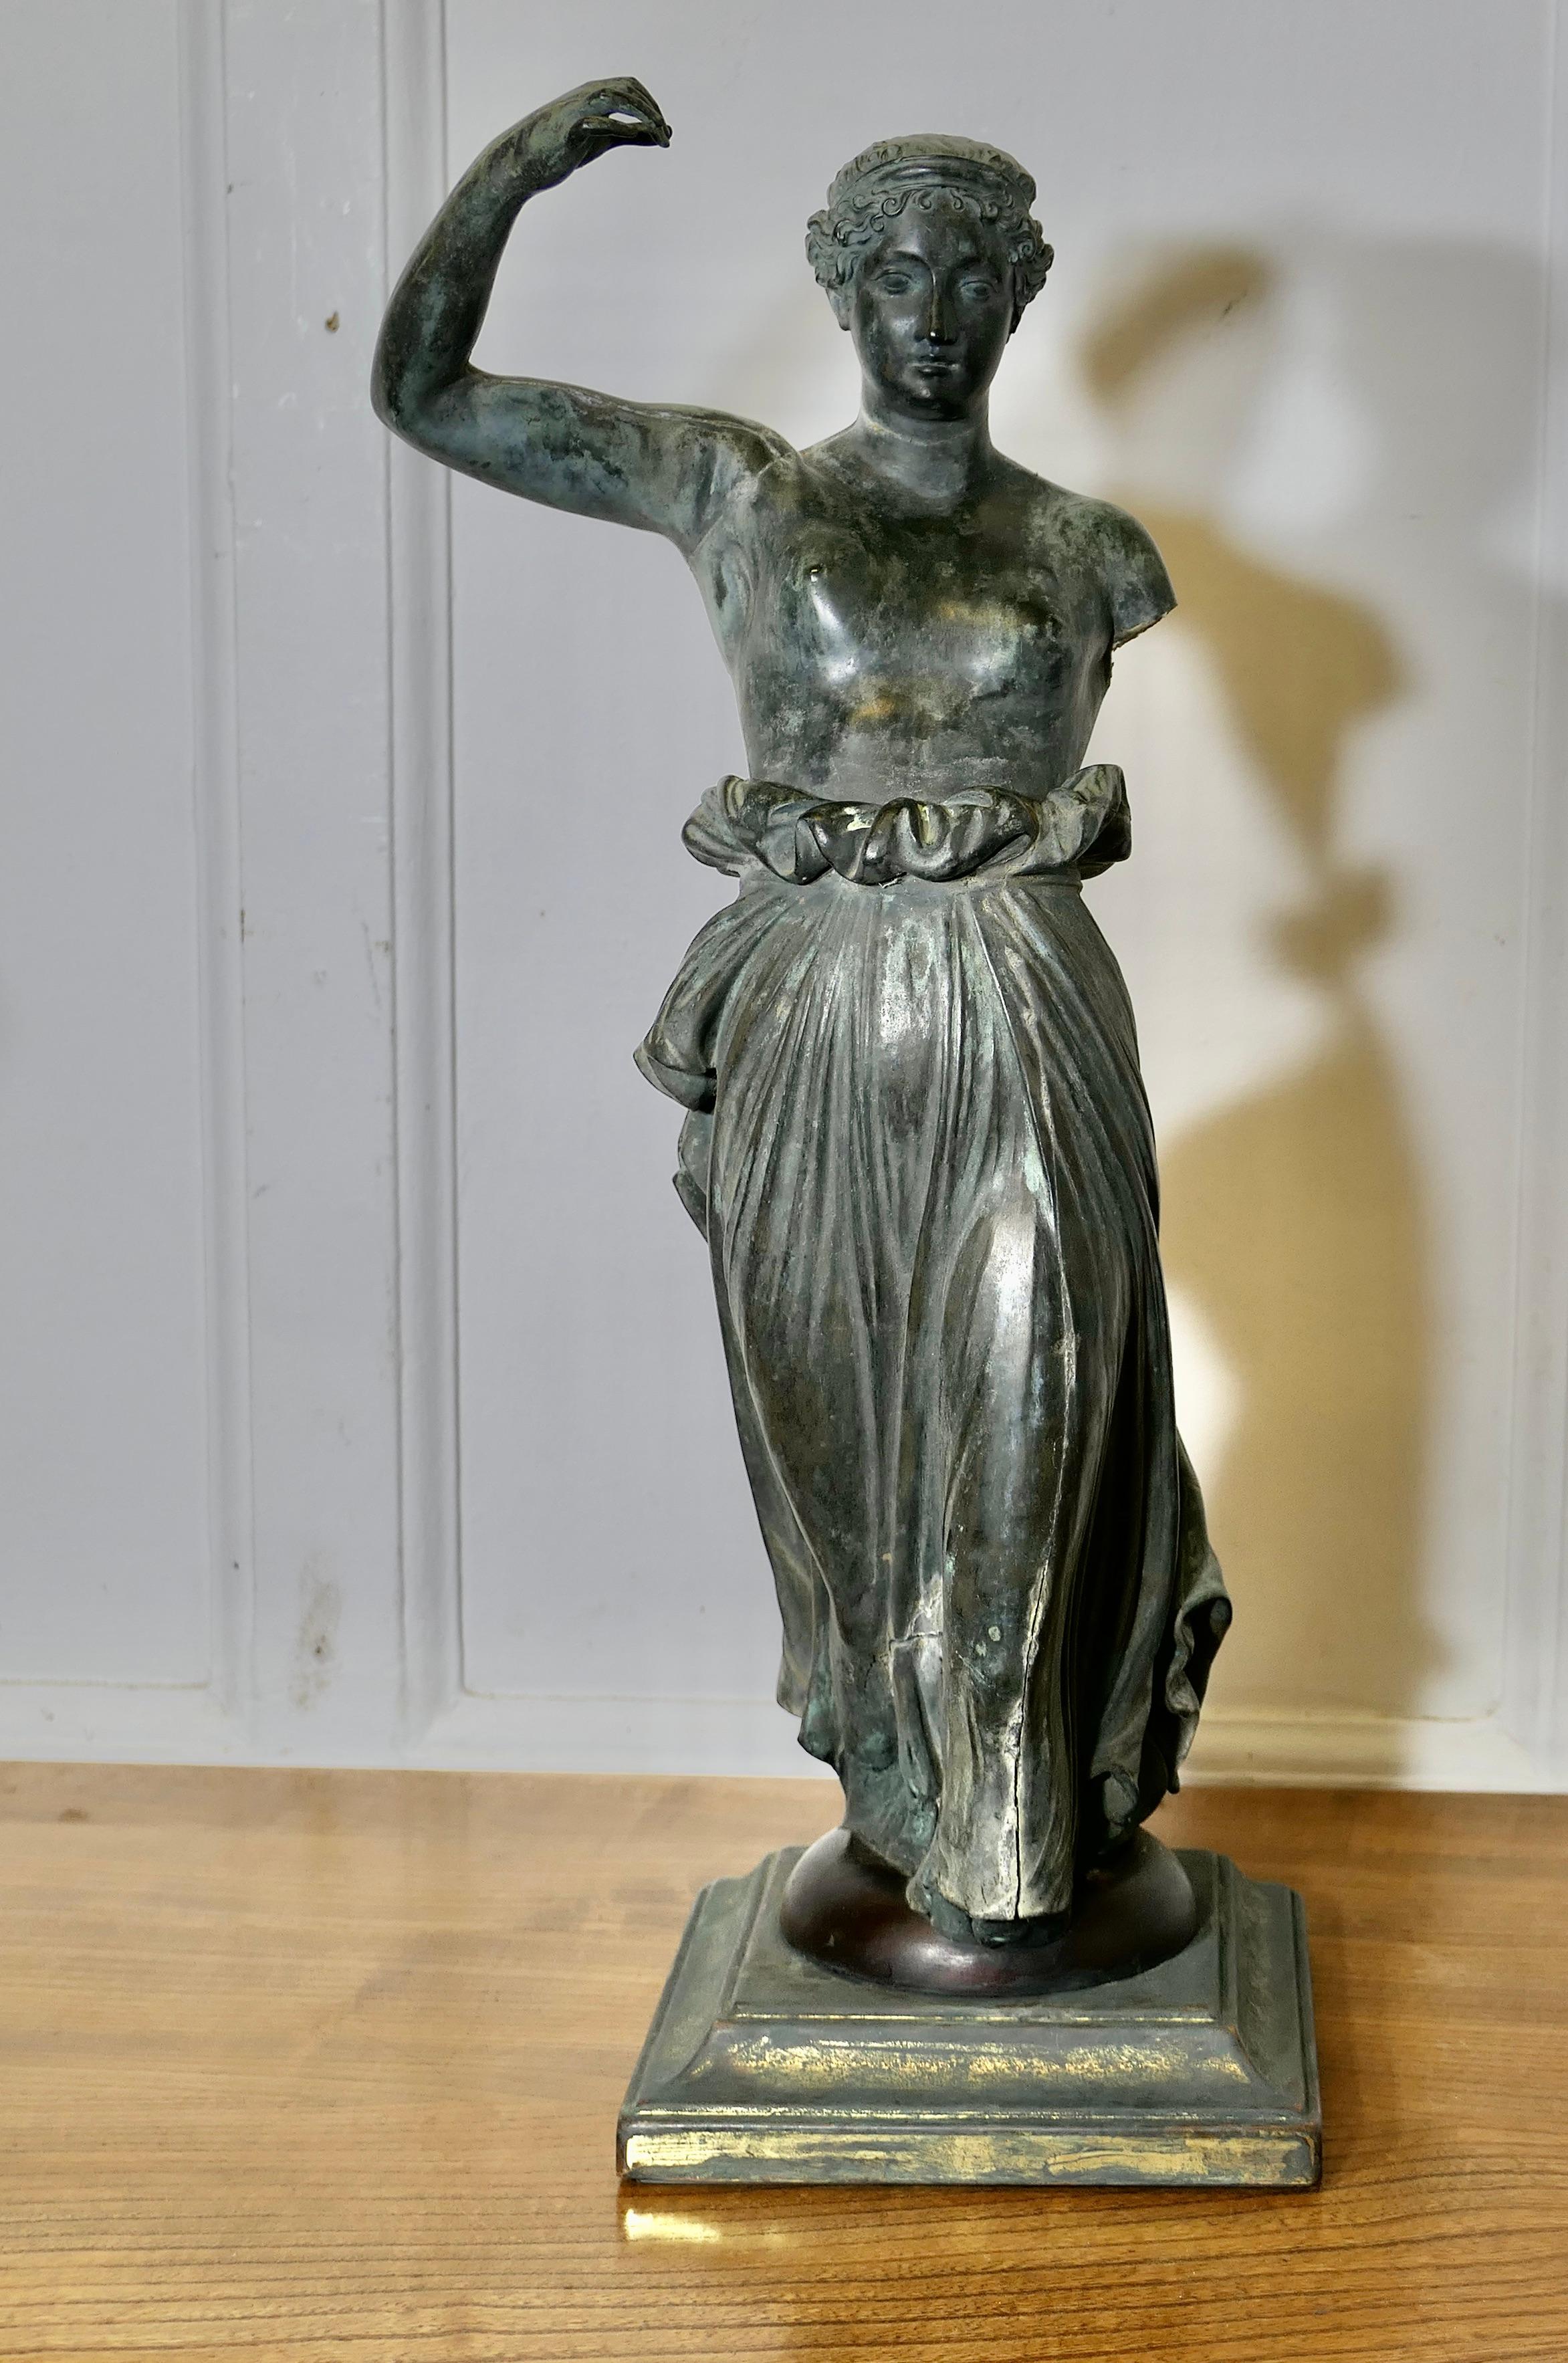 Statue néoclassique en bronze d'Hébé, déesse grecque de la jeunesse

Une belle pièce en bronze posée sur un socle carré.  est entièrement tridimensionnelle et très attrayante de tous les côtés
Hébé a une superbe patine ancienne et il lui manque un